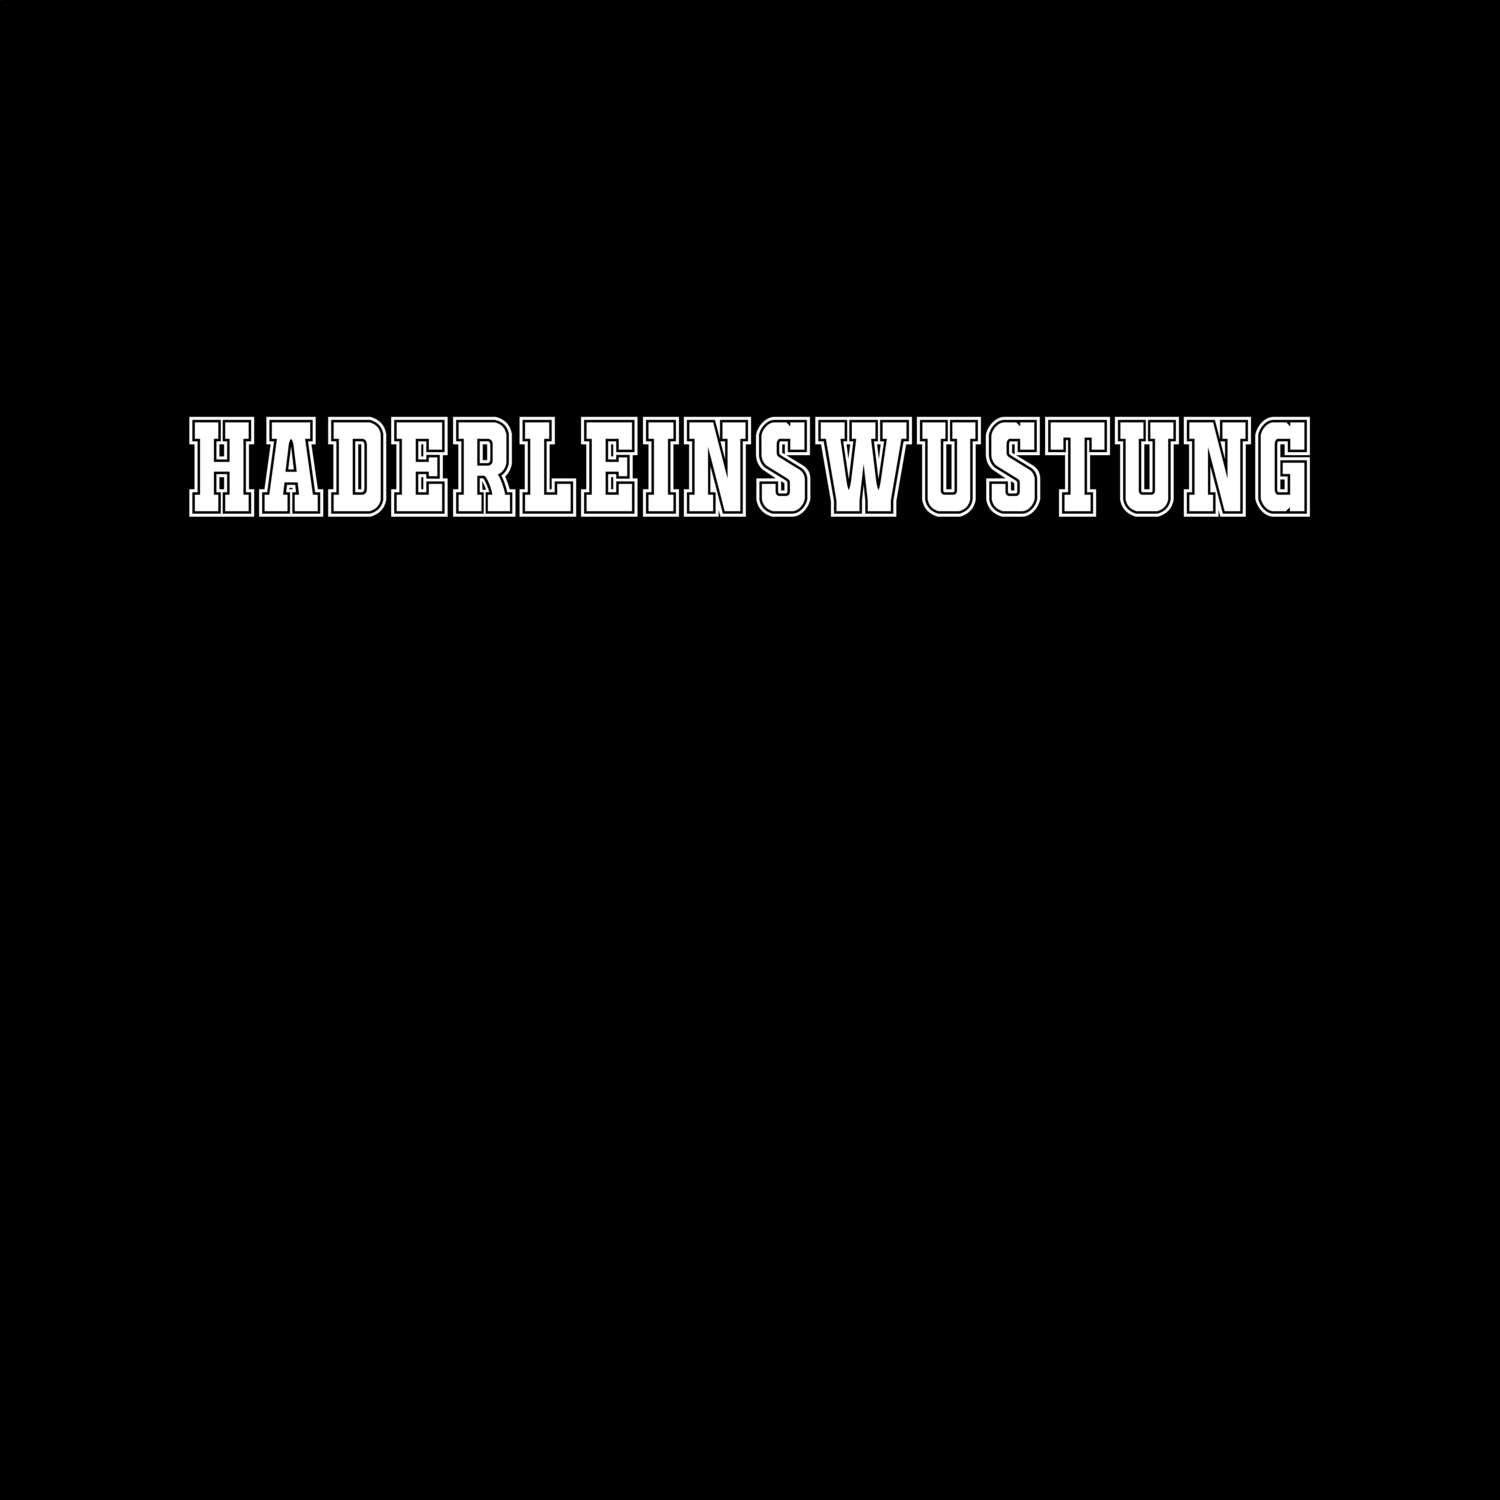 Haderleinswustung T-Shirt »Classic«